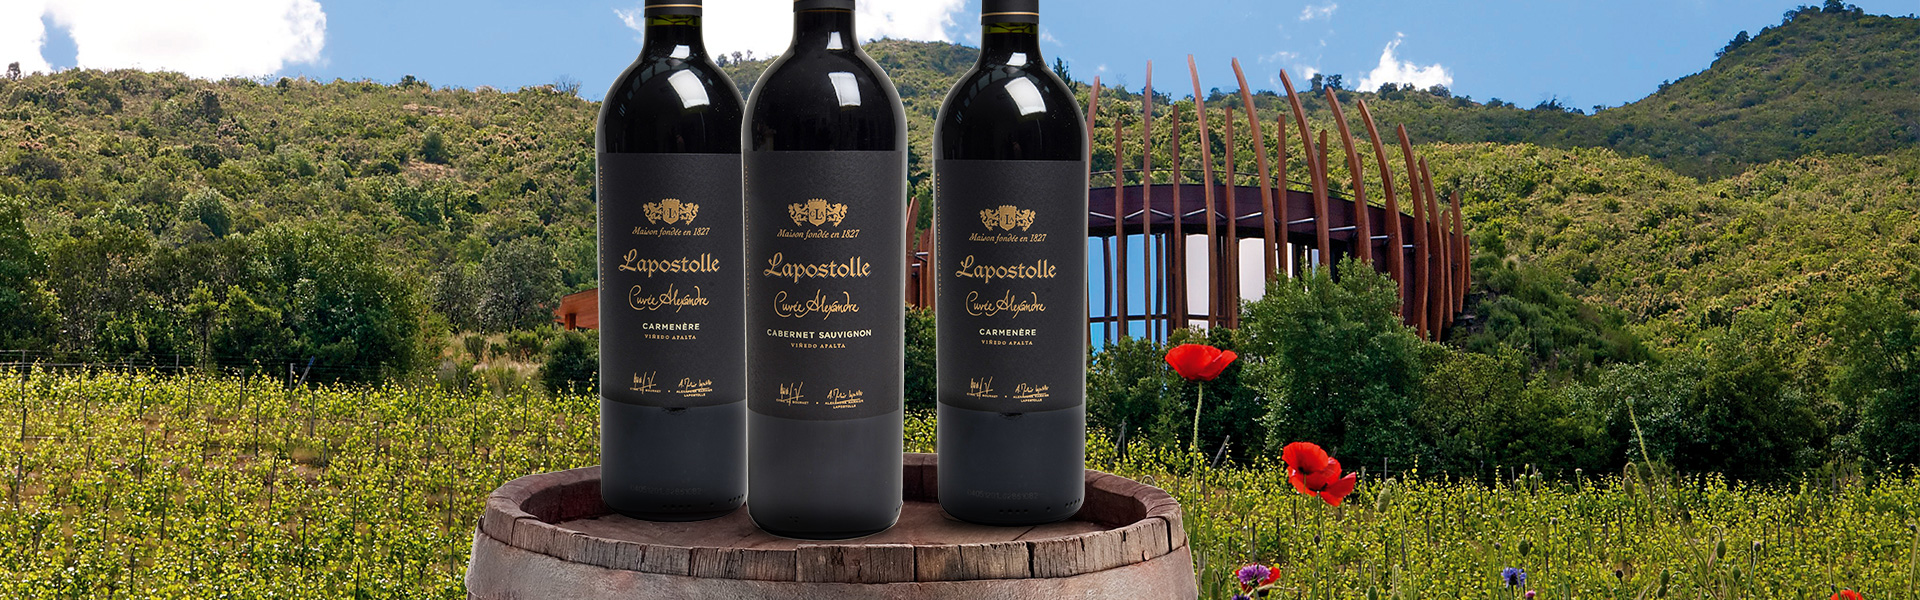 75-Wereldklasse-wijnen-van-Lapostolle.jpg